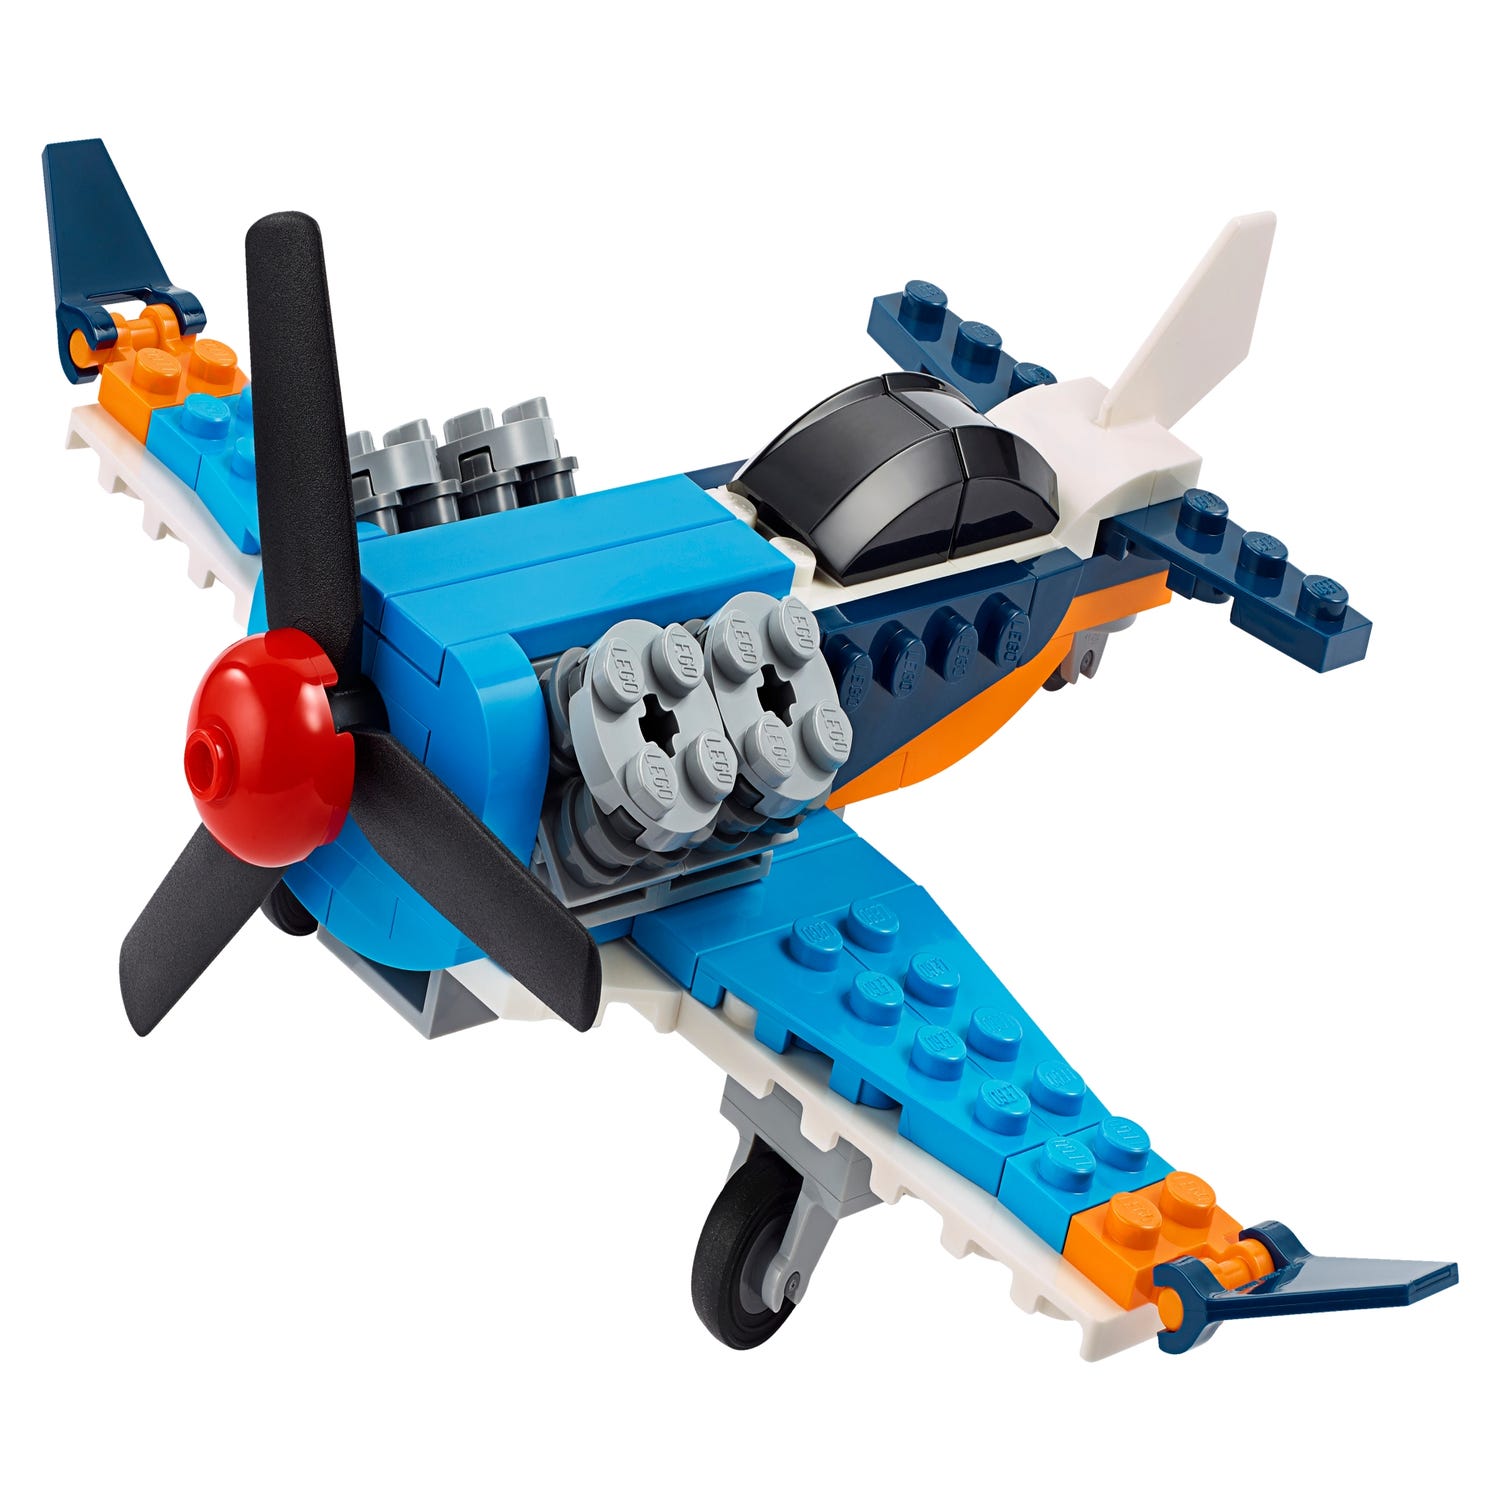 プロペラ飛行機 クリエイター3in1 Lego Com Jp